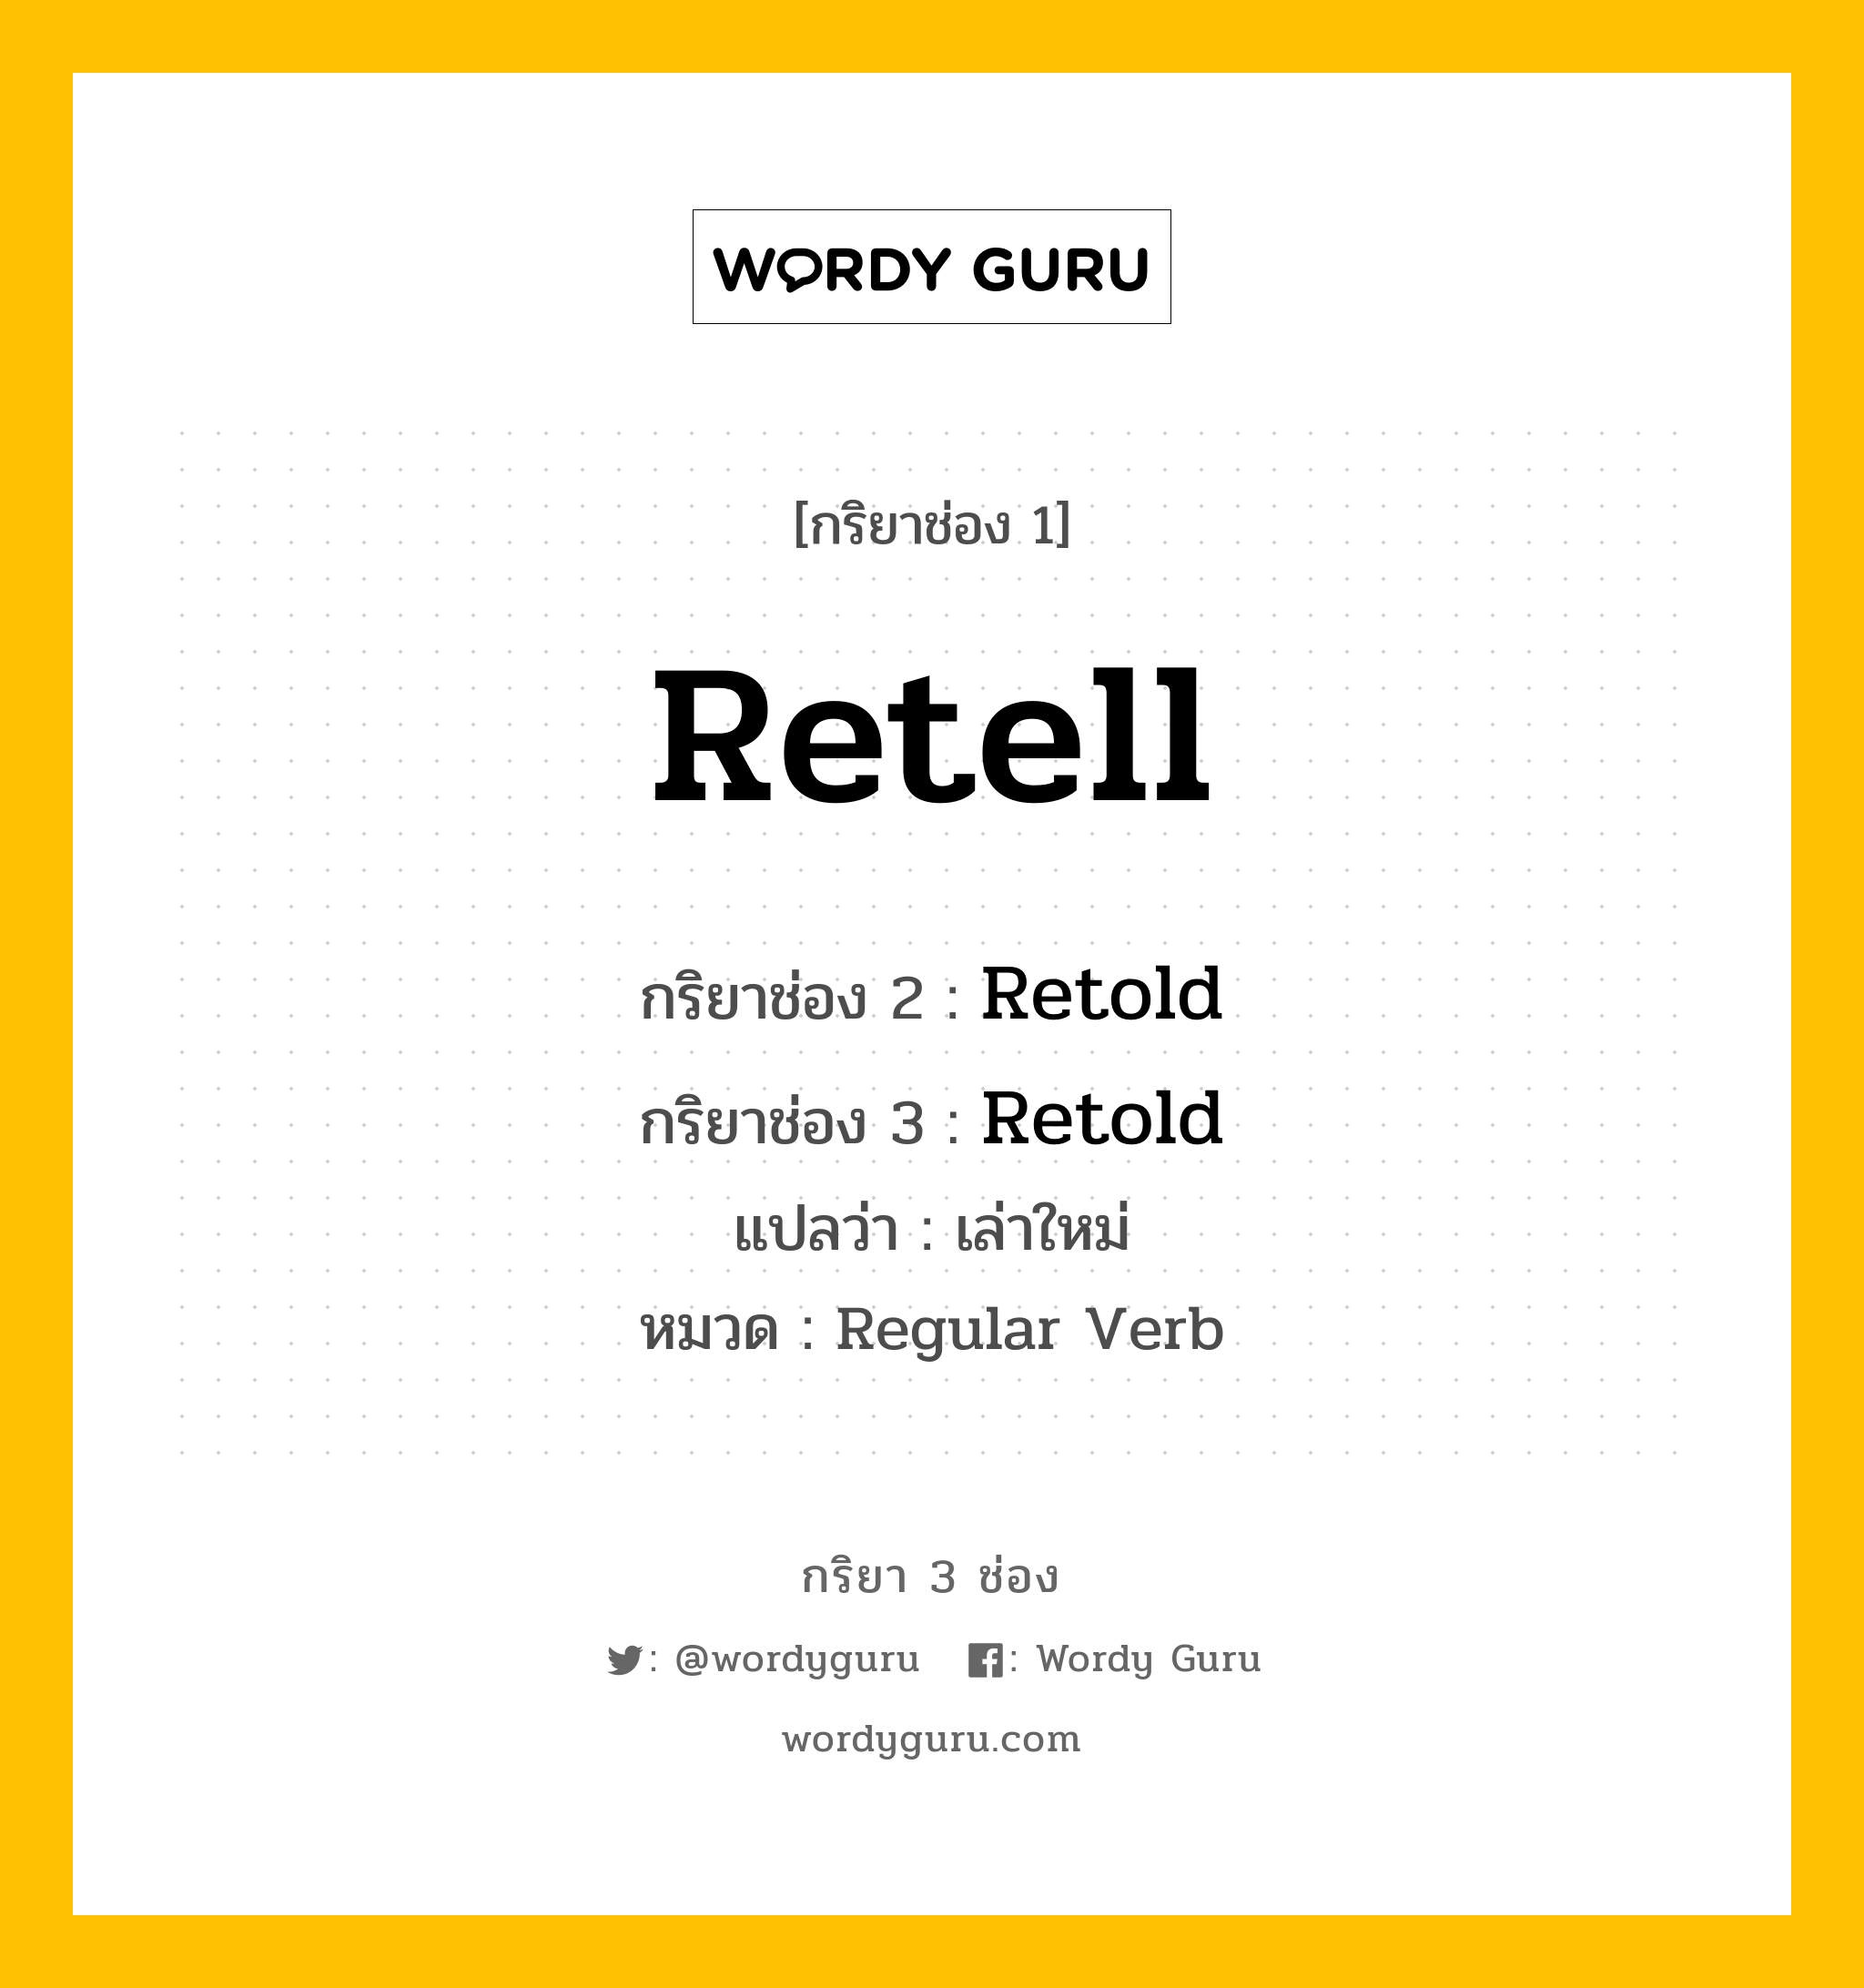 กริยา 3 ช่อง ของ Retell คืออะไร? มาดูคำอ่าน คำแปลกันเลย, กริยาช่อง 1 Retell กริยาช่อง 2 Retold กริยาช่อง 3 Retold แปลว่า เล่าใหม่ หมวด Regular Verb หมวด Regular Verb